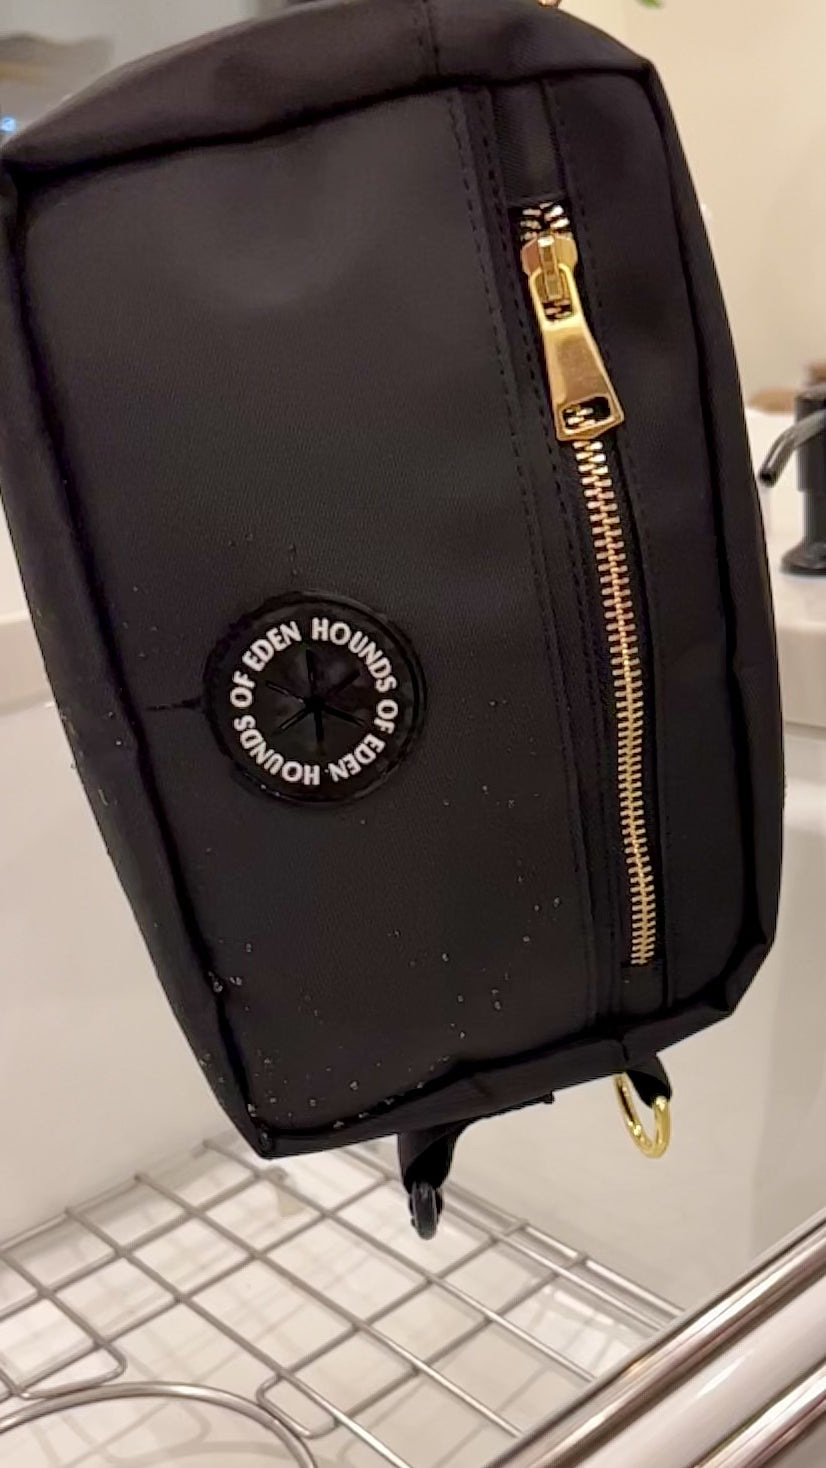 Ulti-Mate Dog Walking Bag - Black - Gold Hardware